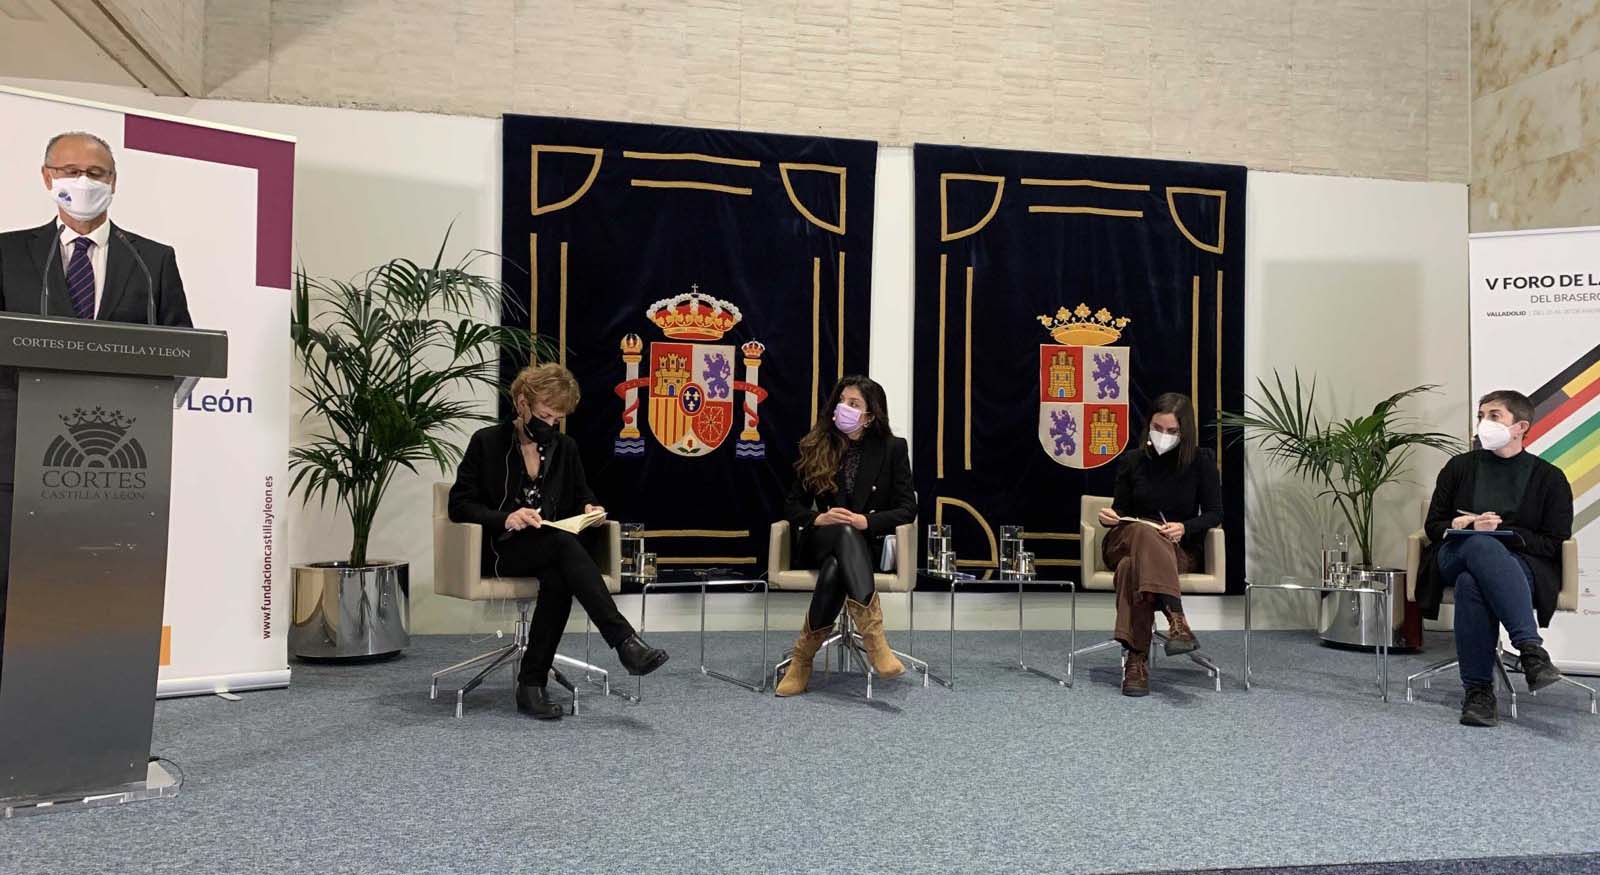 Elena Medel, María Sánchez i Soleá Morente inauguren el V Fòrum de la Cultura a Valladolid